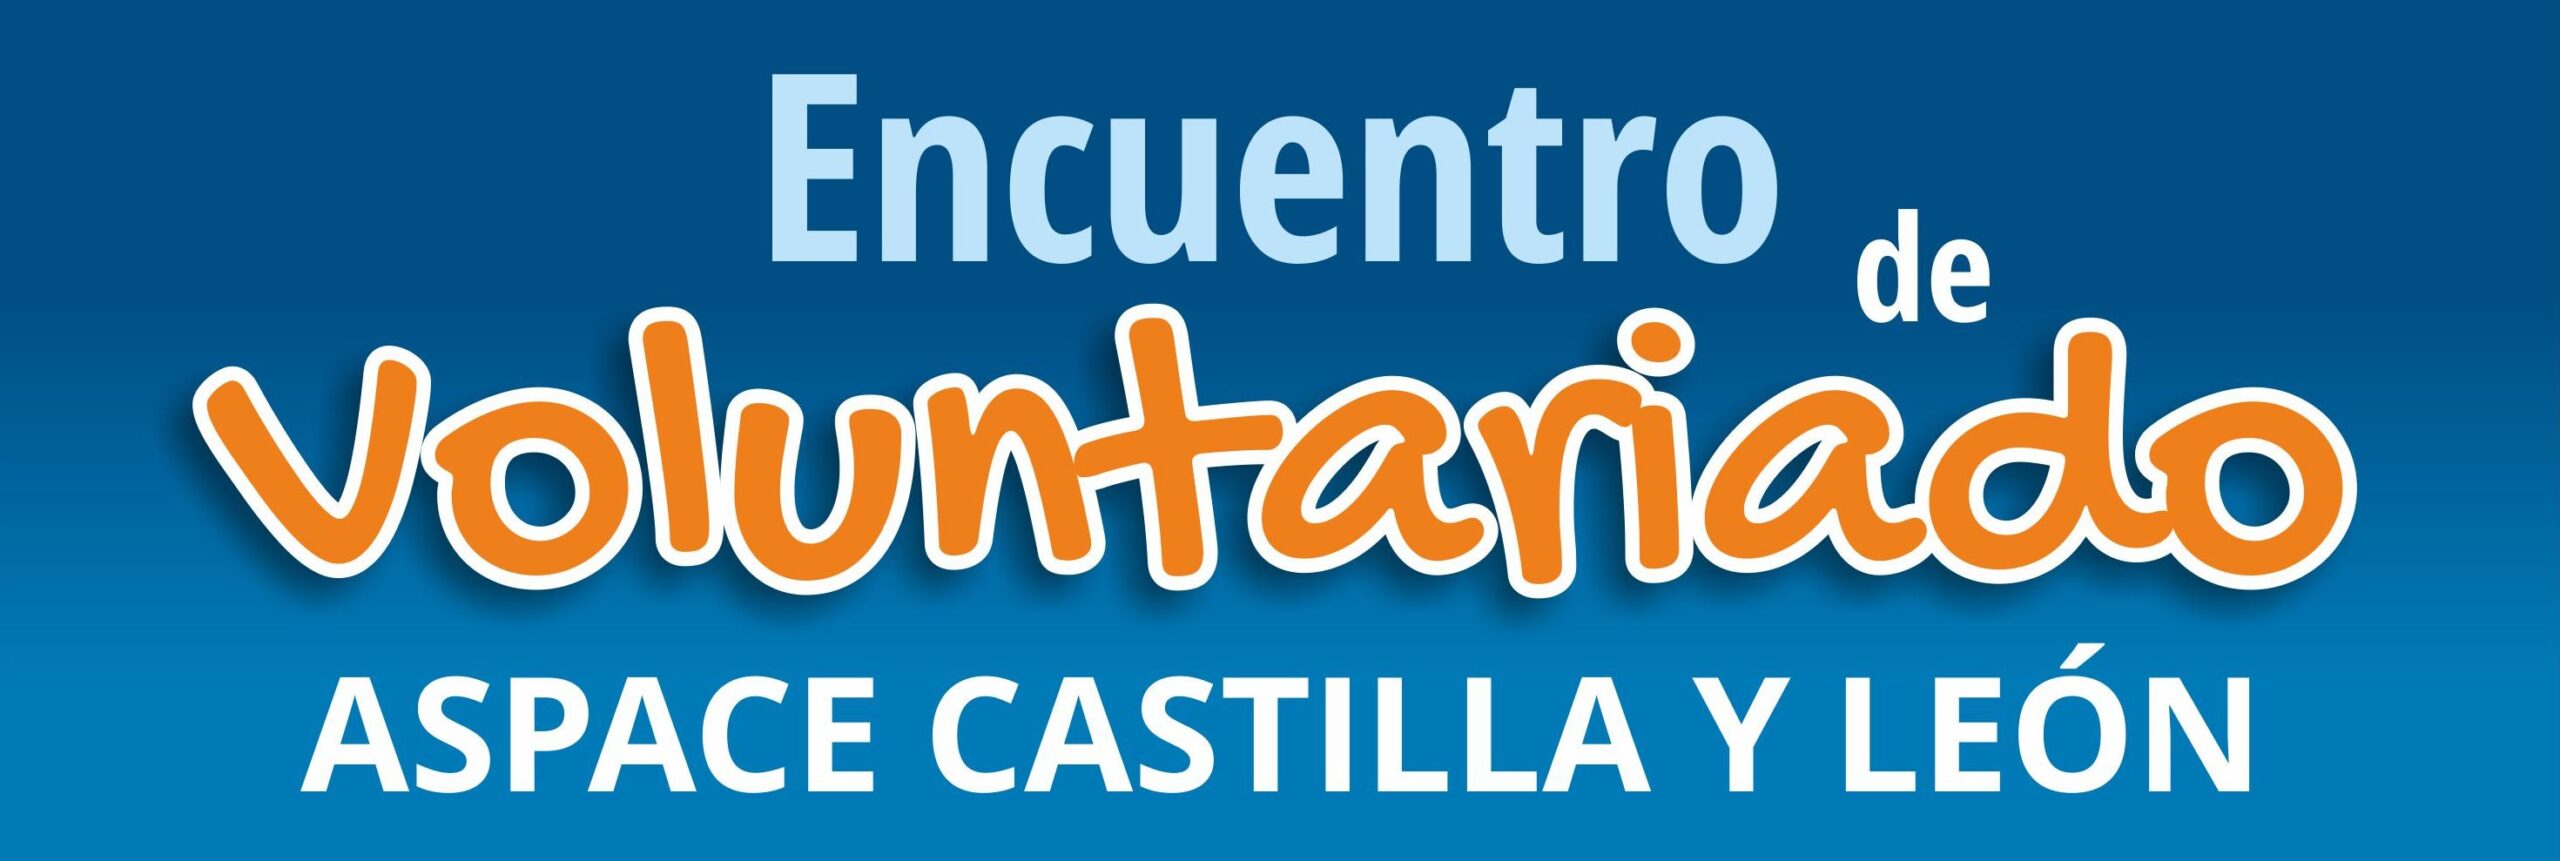 Encuentro de voluntariado Aspace Castilla y León